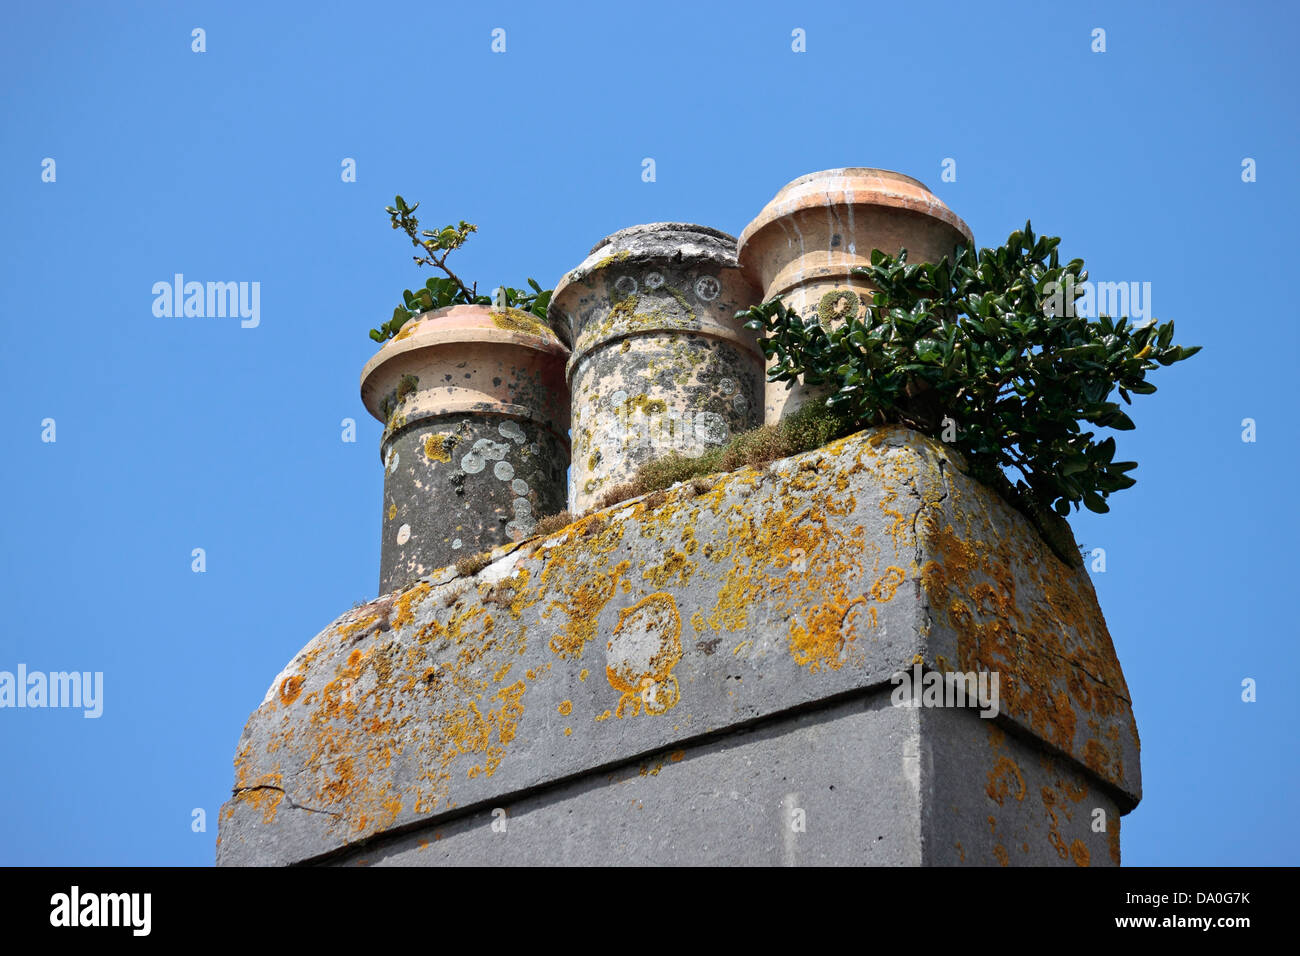 Pots de cheminée avec divers lichens mousses et plantes croissant sur eux Banque D'Images